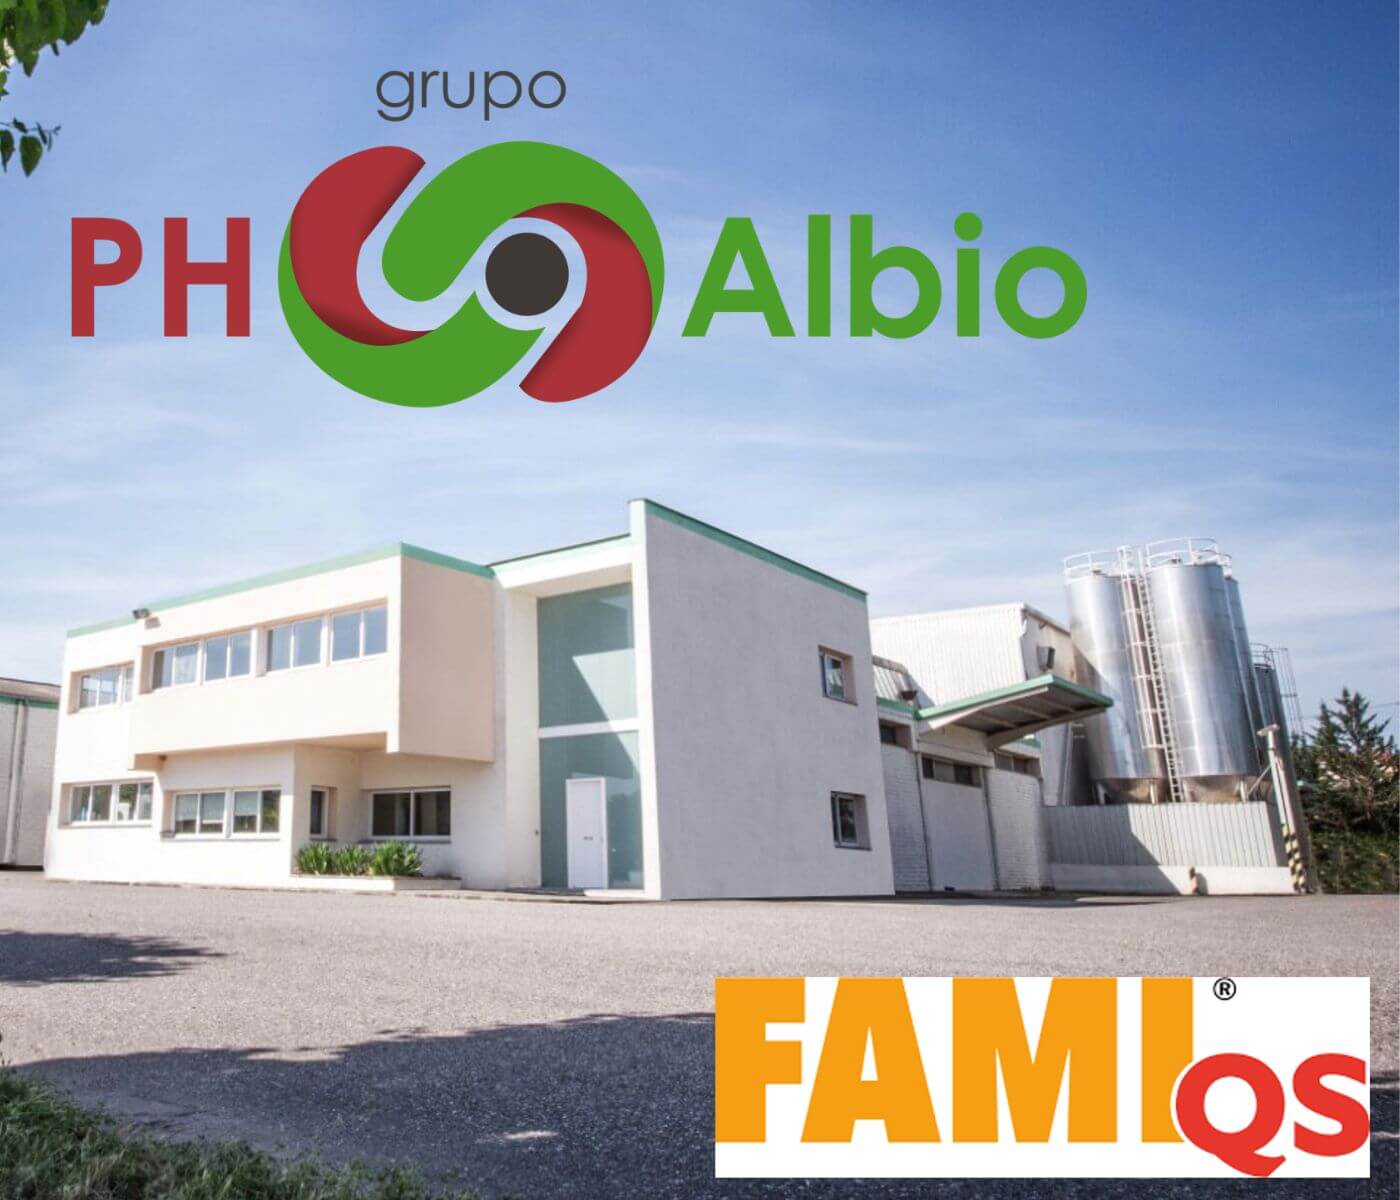 Grupo PH-Albio obtiene certificación FAMI QS para su nueva planta de producción